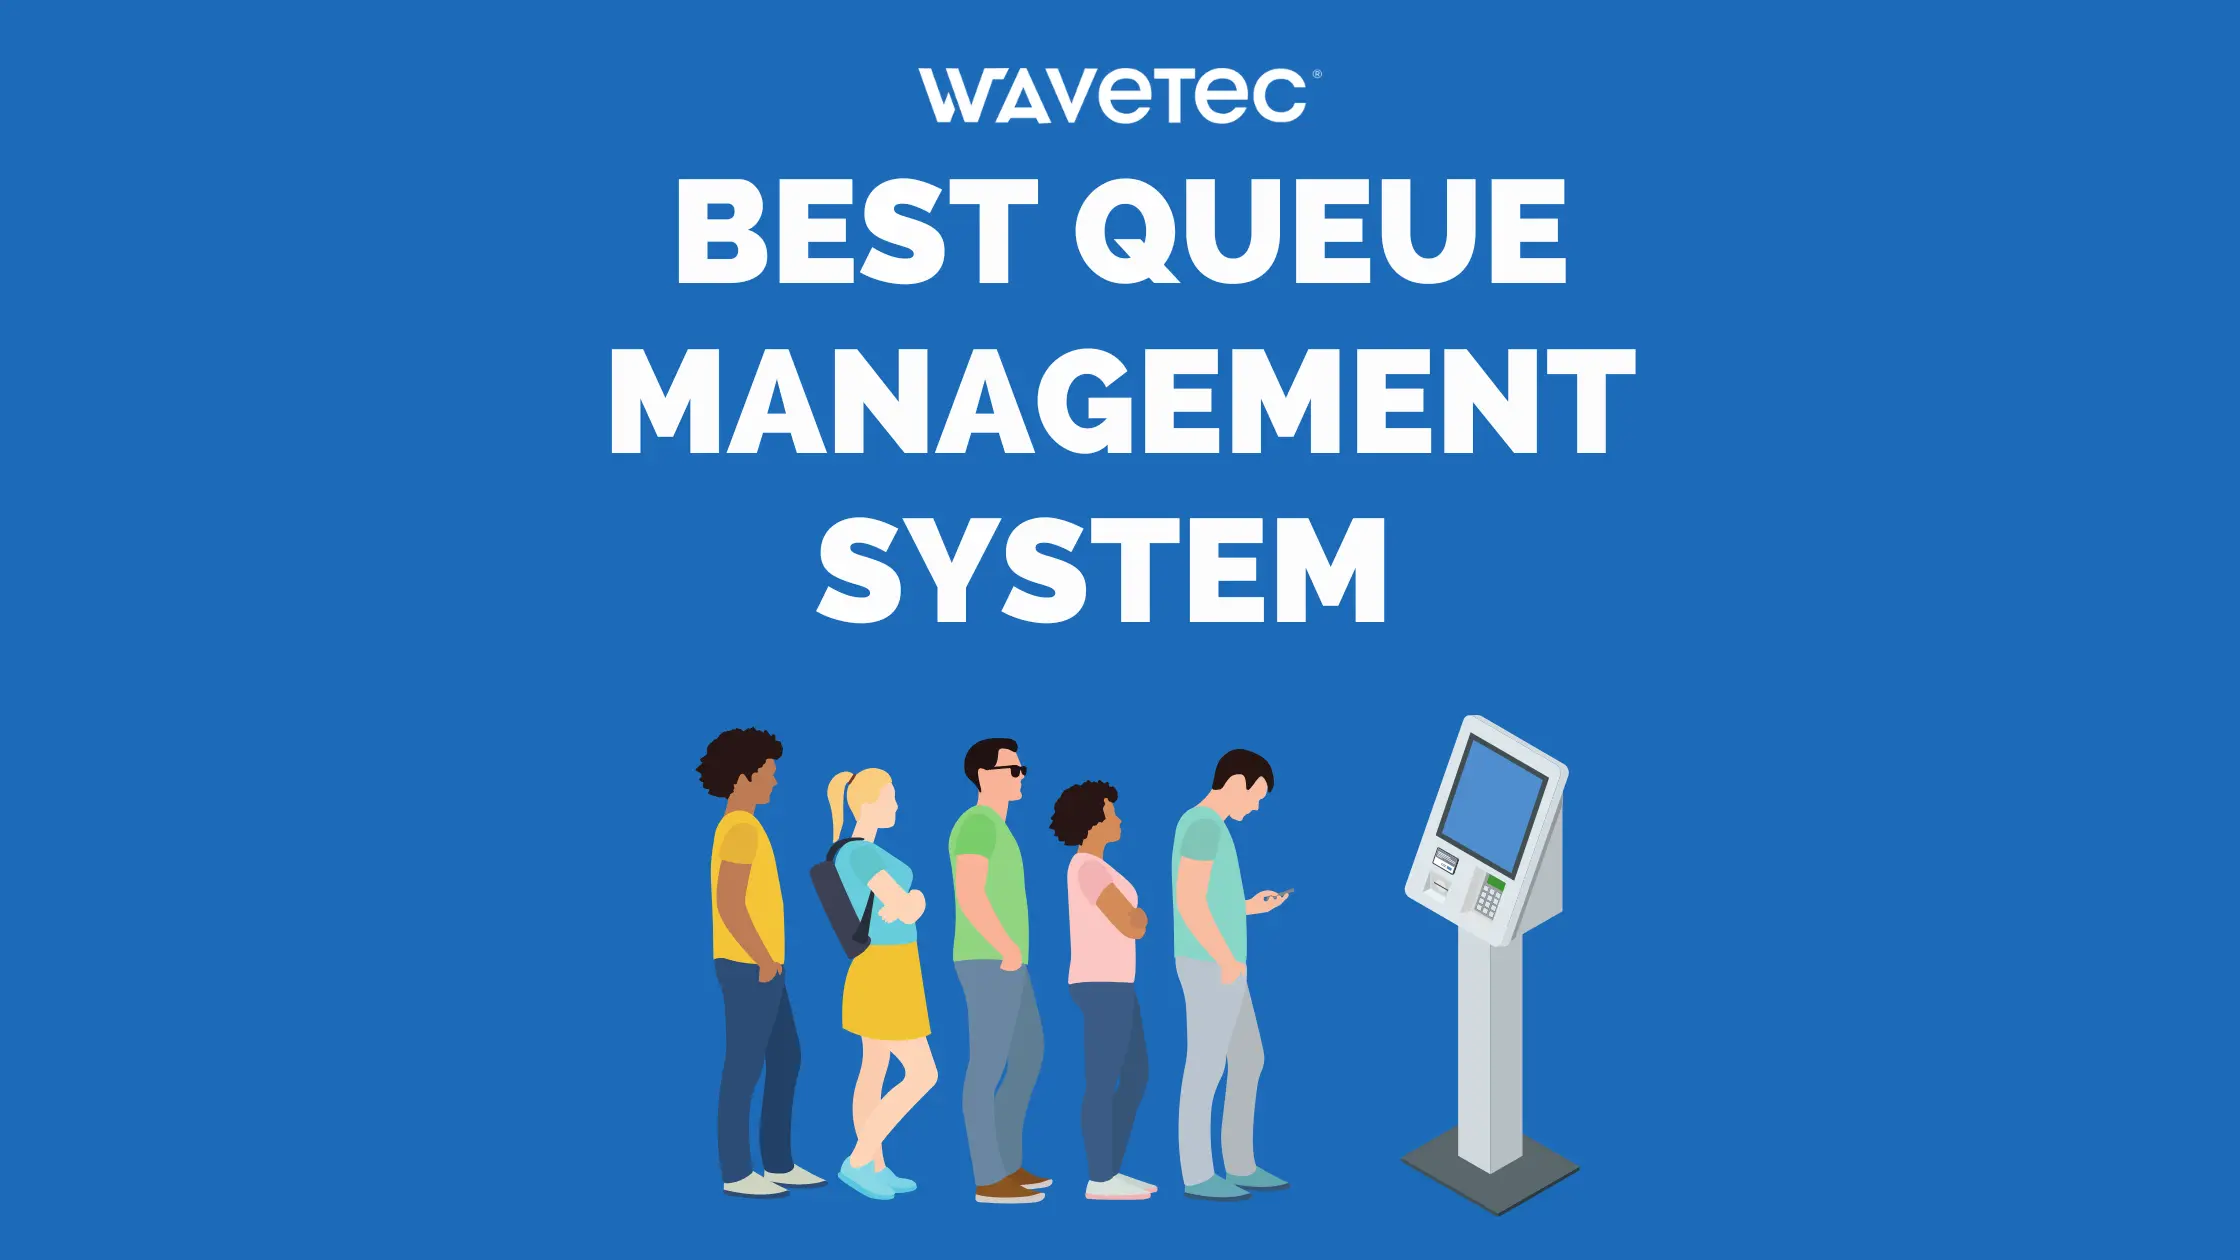 best queue management system blog